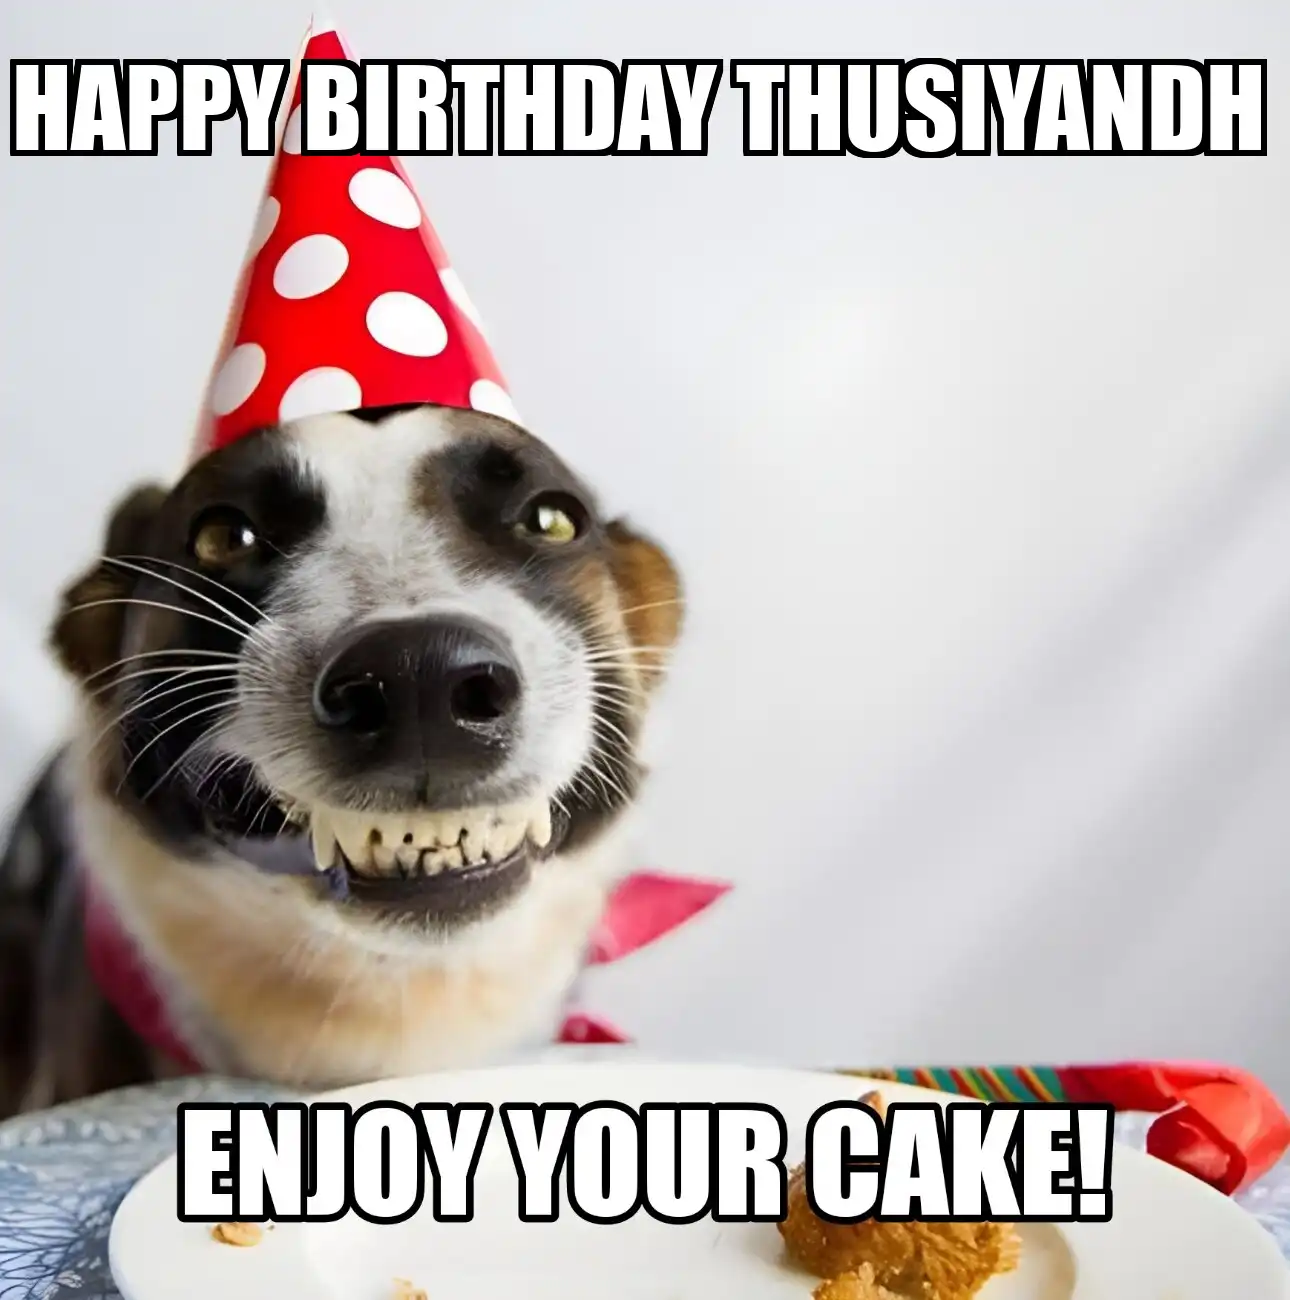 Happy Birthday Thusiyandh Enjoy Your Cake Dog Meme